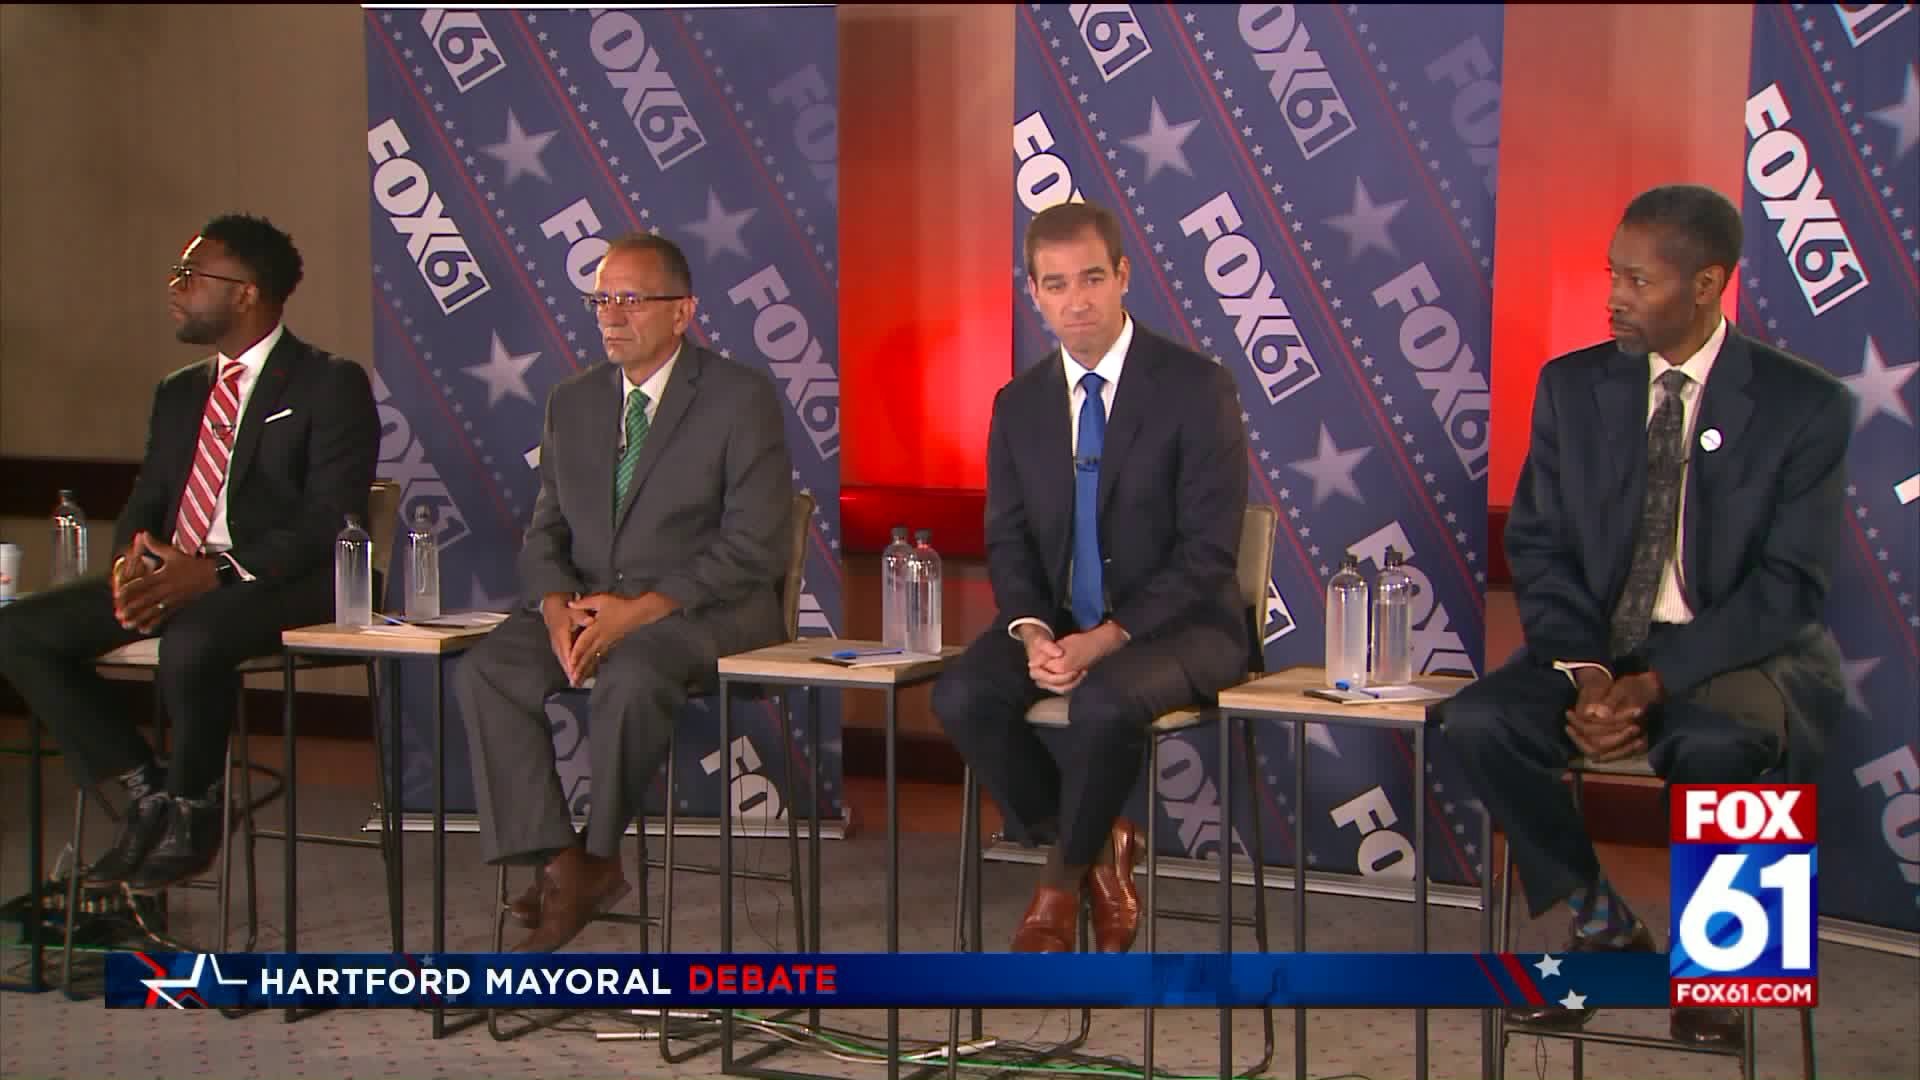 Hartford Mayoral Debate: Development in "Forgotten Neighborhoods"